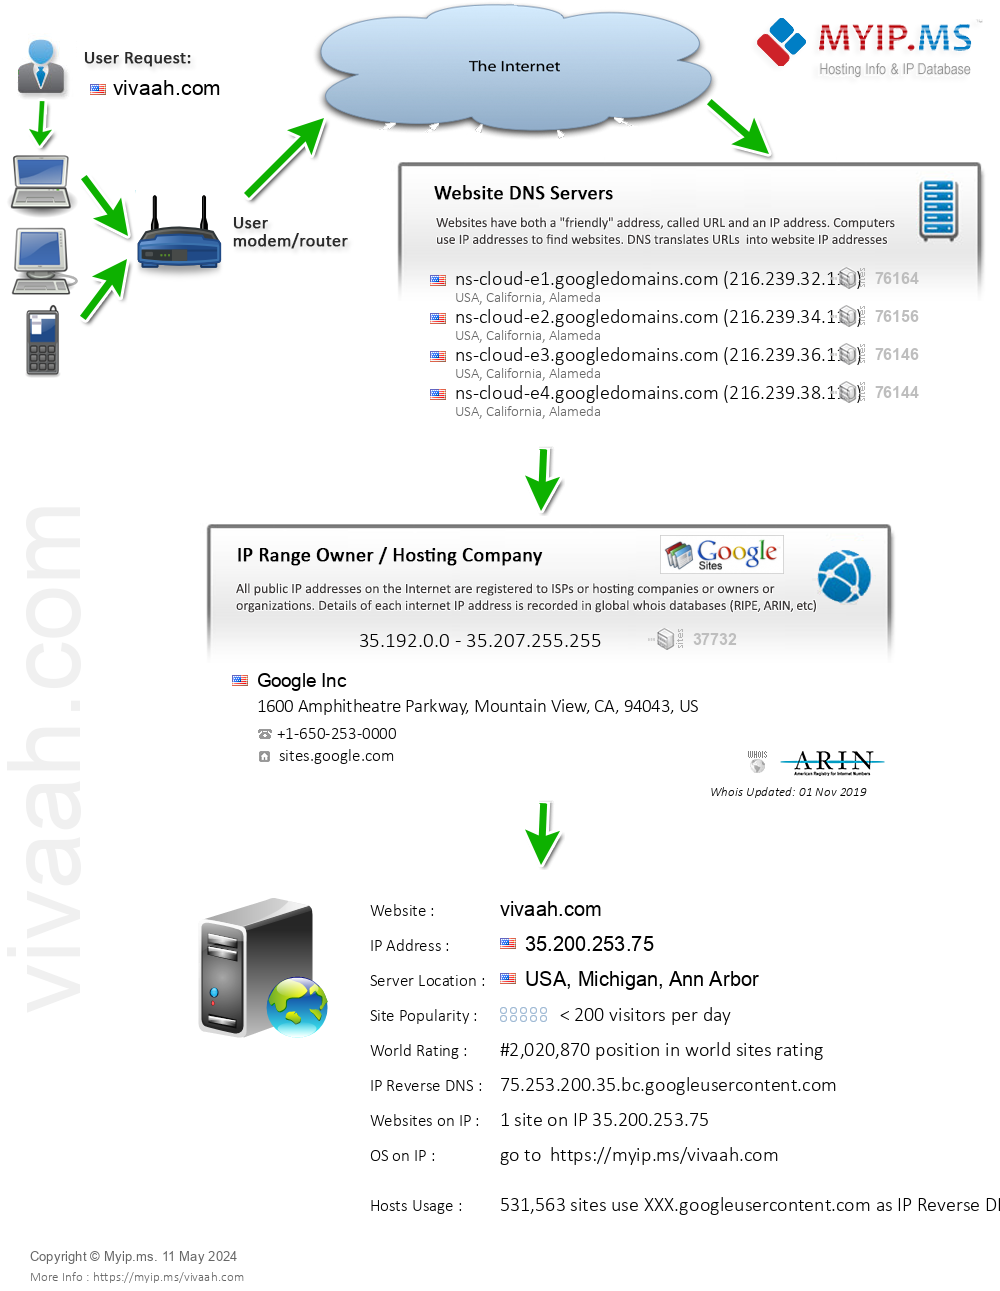 Vivaah.com - Website Hosting Visual IP Diagram